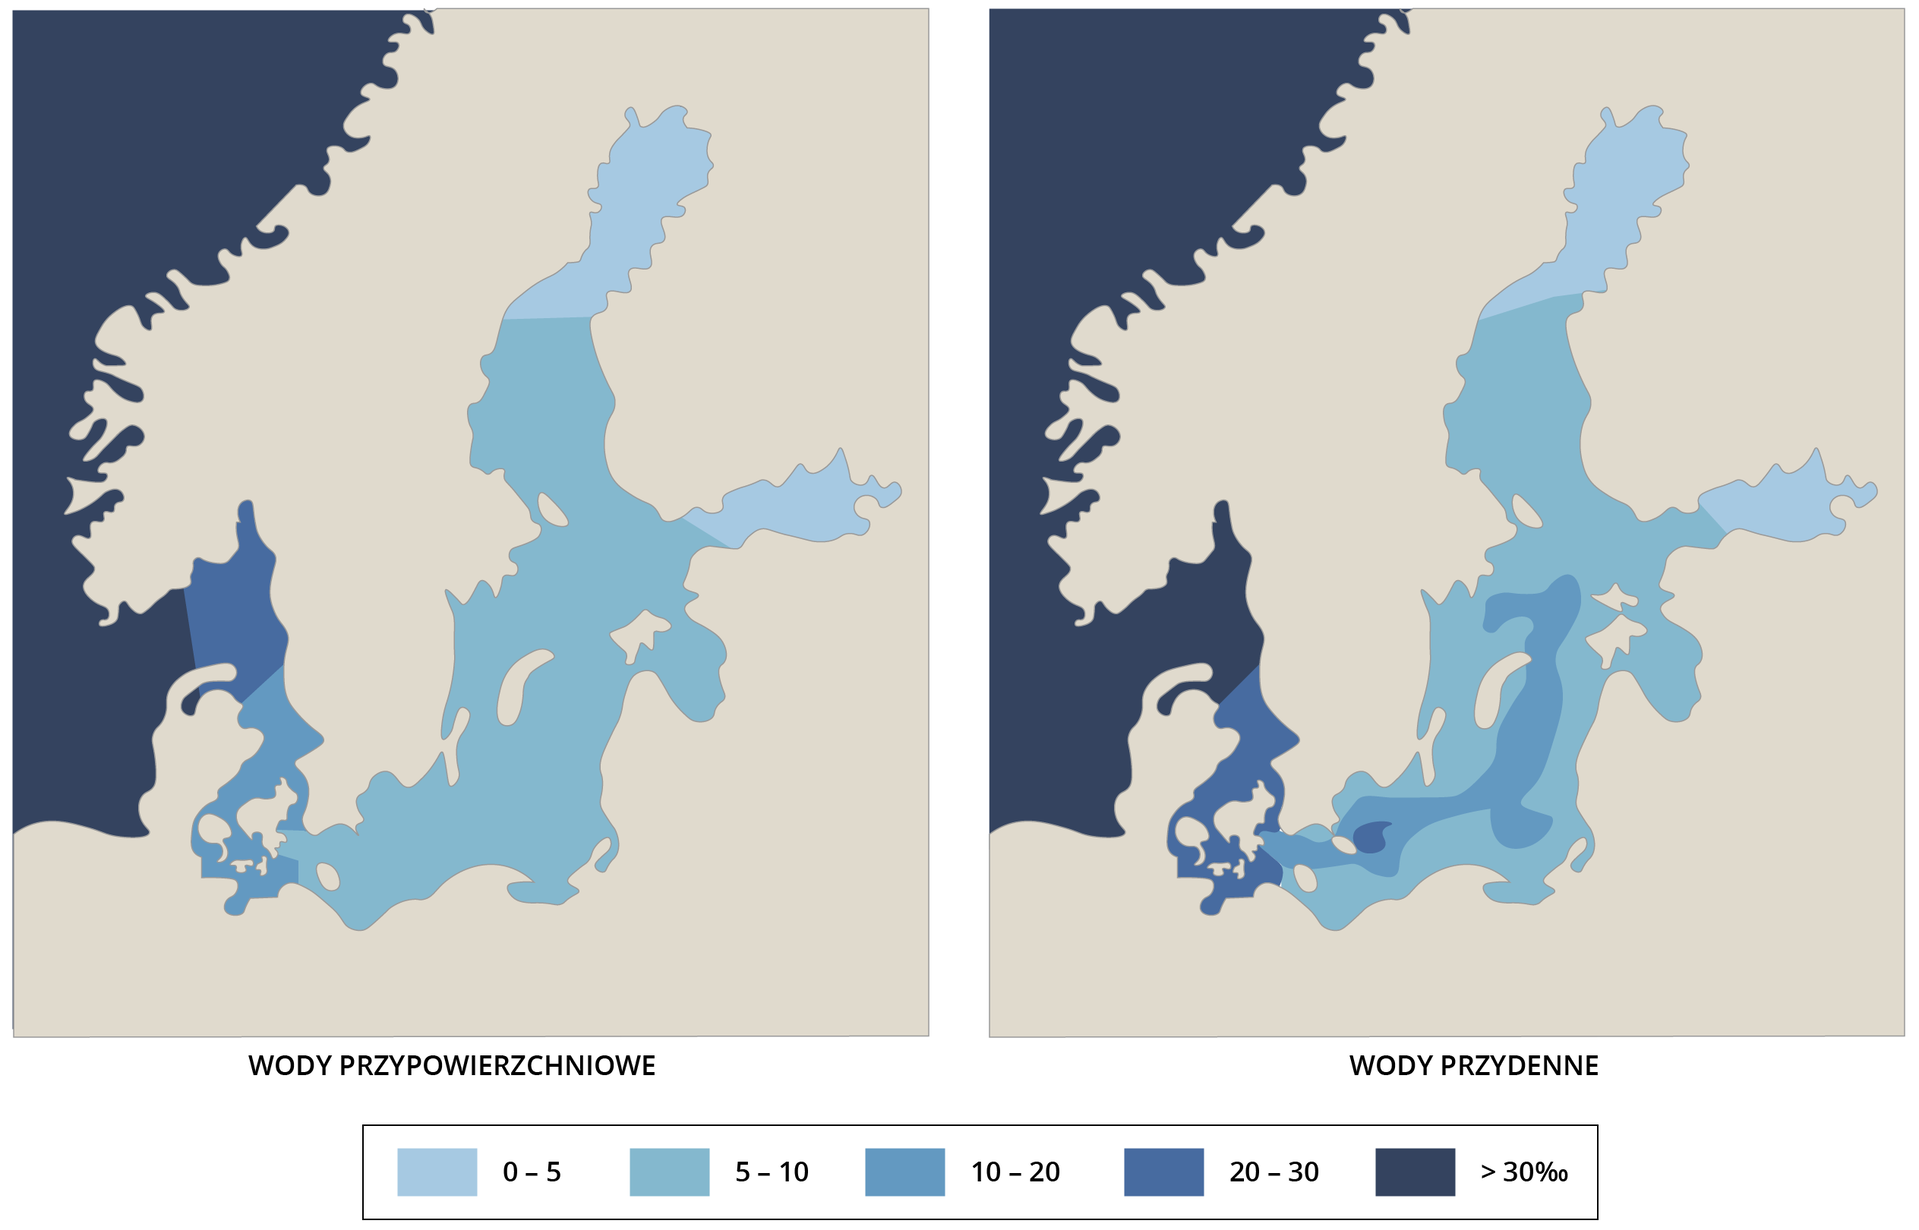 Na ilustracji są dwie mapy Morza Bałtyckiego. Prezentują zasolenie. Na pierwszej mapie pokazano wody przypowierzchniowe. Na drugiej przydenne. Zasolenie wód przypowierzchniowych rzędu od 0 do 5 jest w północnej części Zatoki Botnickiej oraz we wschodniej części Zatoki Fińskiej. Zasolenie rzędu 5-10 promili obejmuje wiekszą część Bałtyku. Zasolenie od 10 do 20 promili występuje w rejonie Kattegatu, a zasolenie rzędu 20-30 promili w rejonie Skattegatu. Morze Norweskie ma zasolenie powyżej 30 promili. W przypadku wód przydennych zasolenie rzędu 0-5 promili to północna część Zatoki Botnickiej i wschodnia część Zatoki Fińskiej. Centralna część Bałtyku właściwego ma zasolenie 10-20 promili. W pobliżu Bornholmu i w cieśninie Kattegat jest zasolenie rzędu 20-30 promili. W cieśninie Skagerrak jest zasolenie powyżej 30 promili. Pozostałe wody Bałtyku maja zasolenie 10-20 promili.      